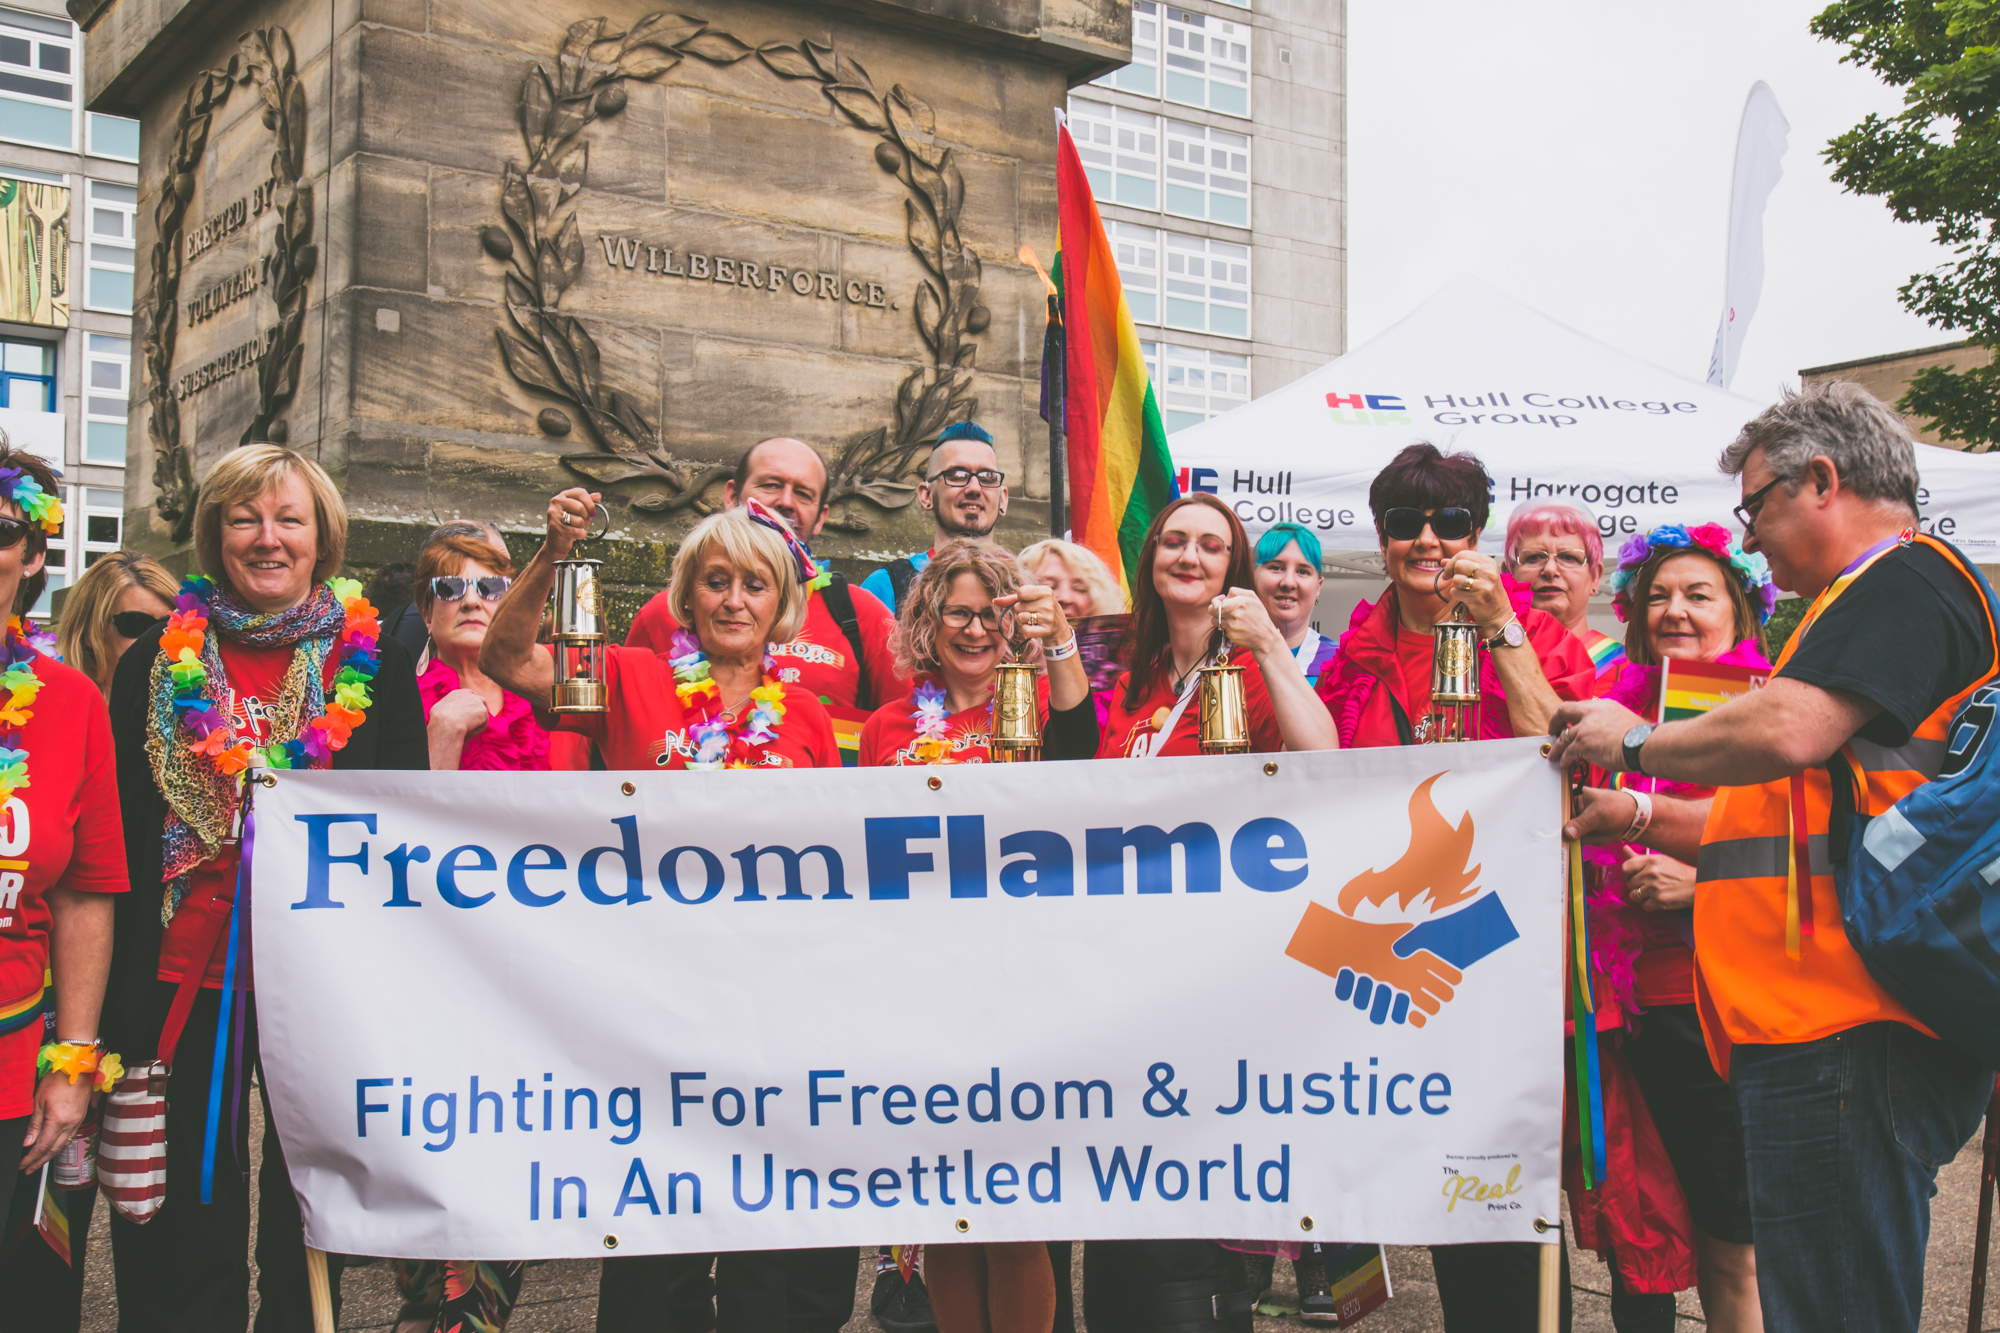 Freedom flame